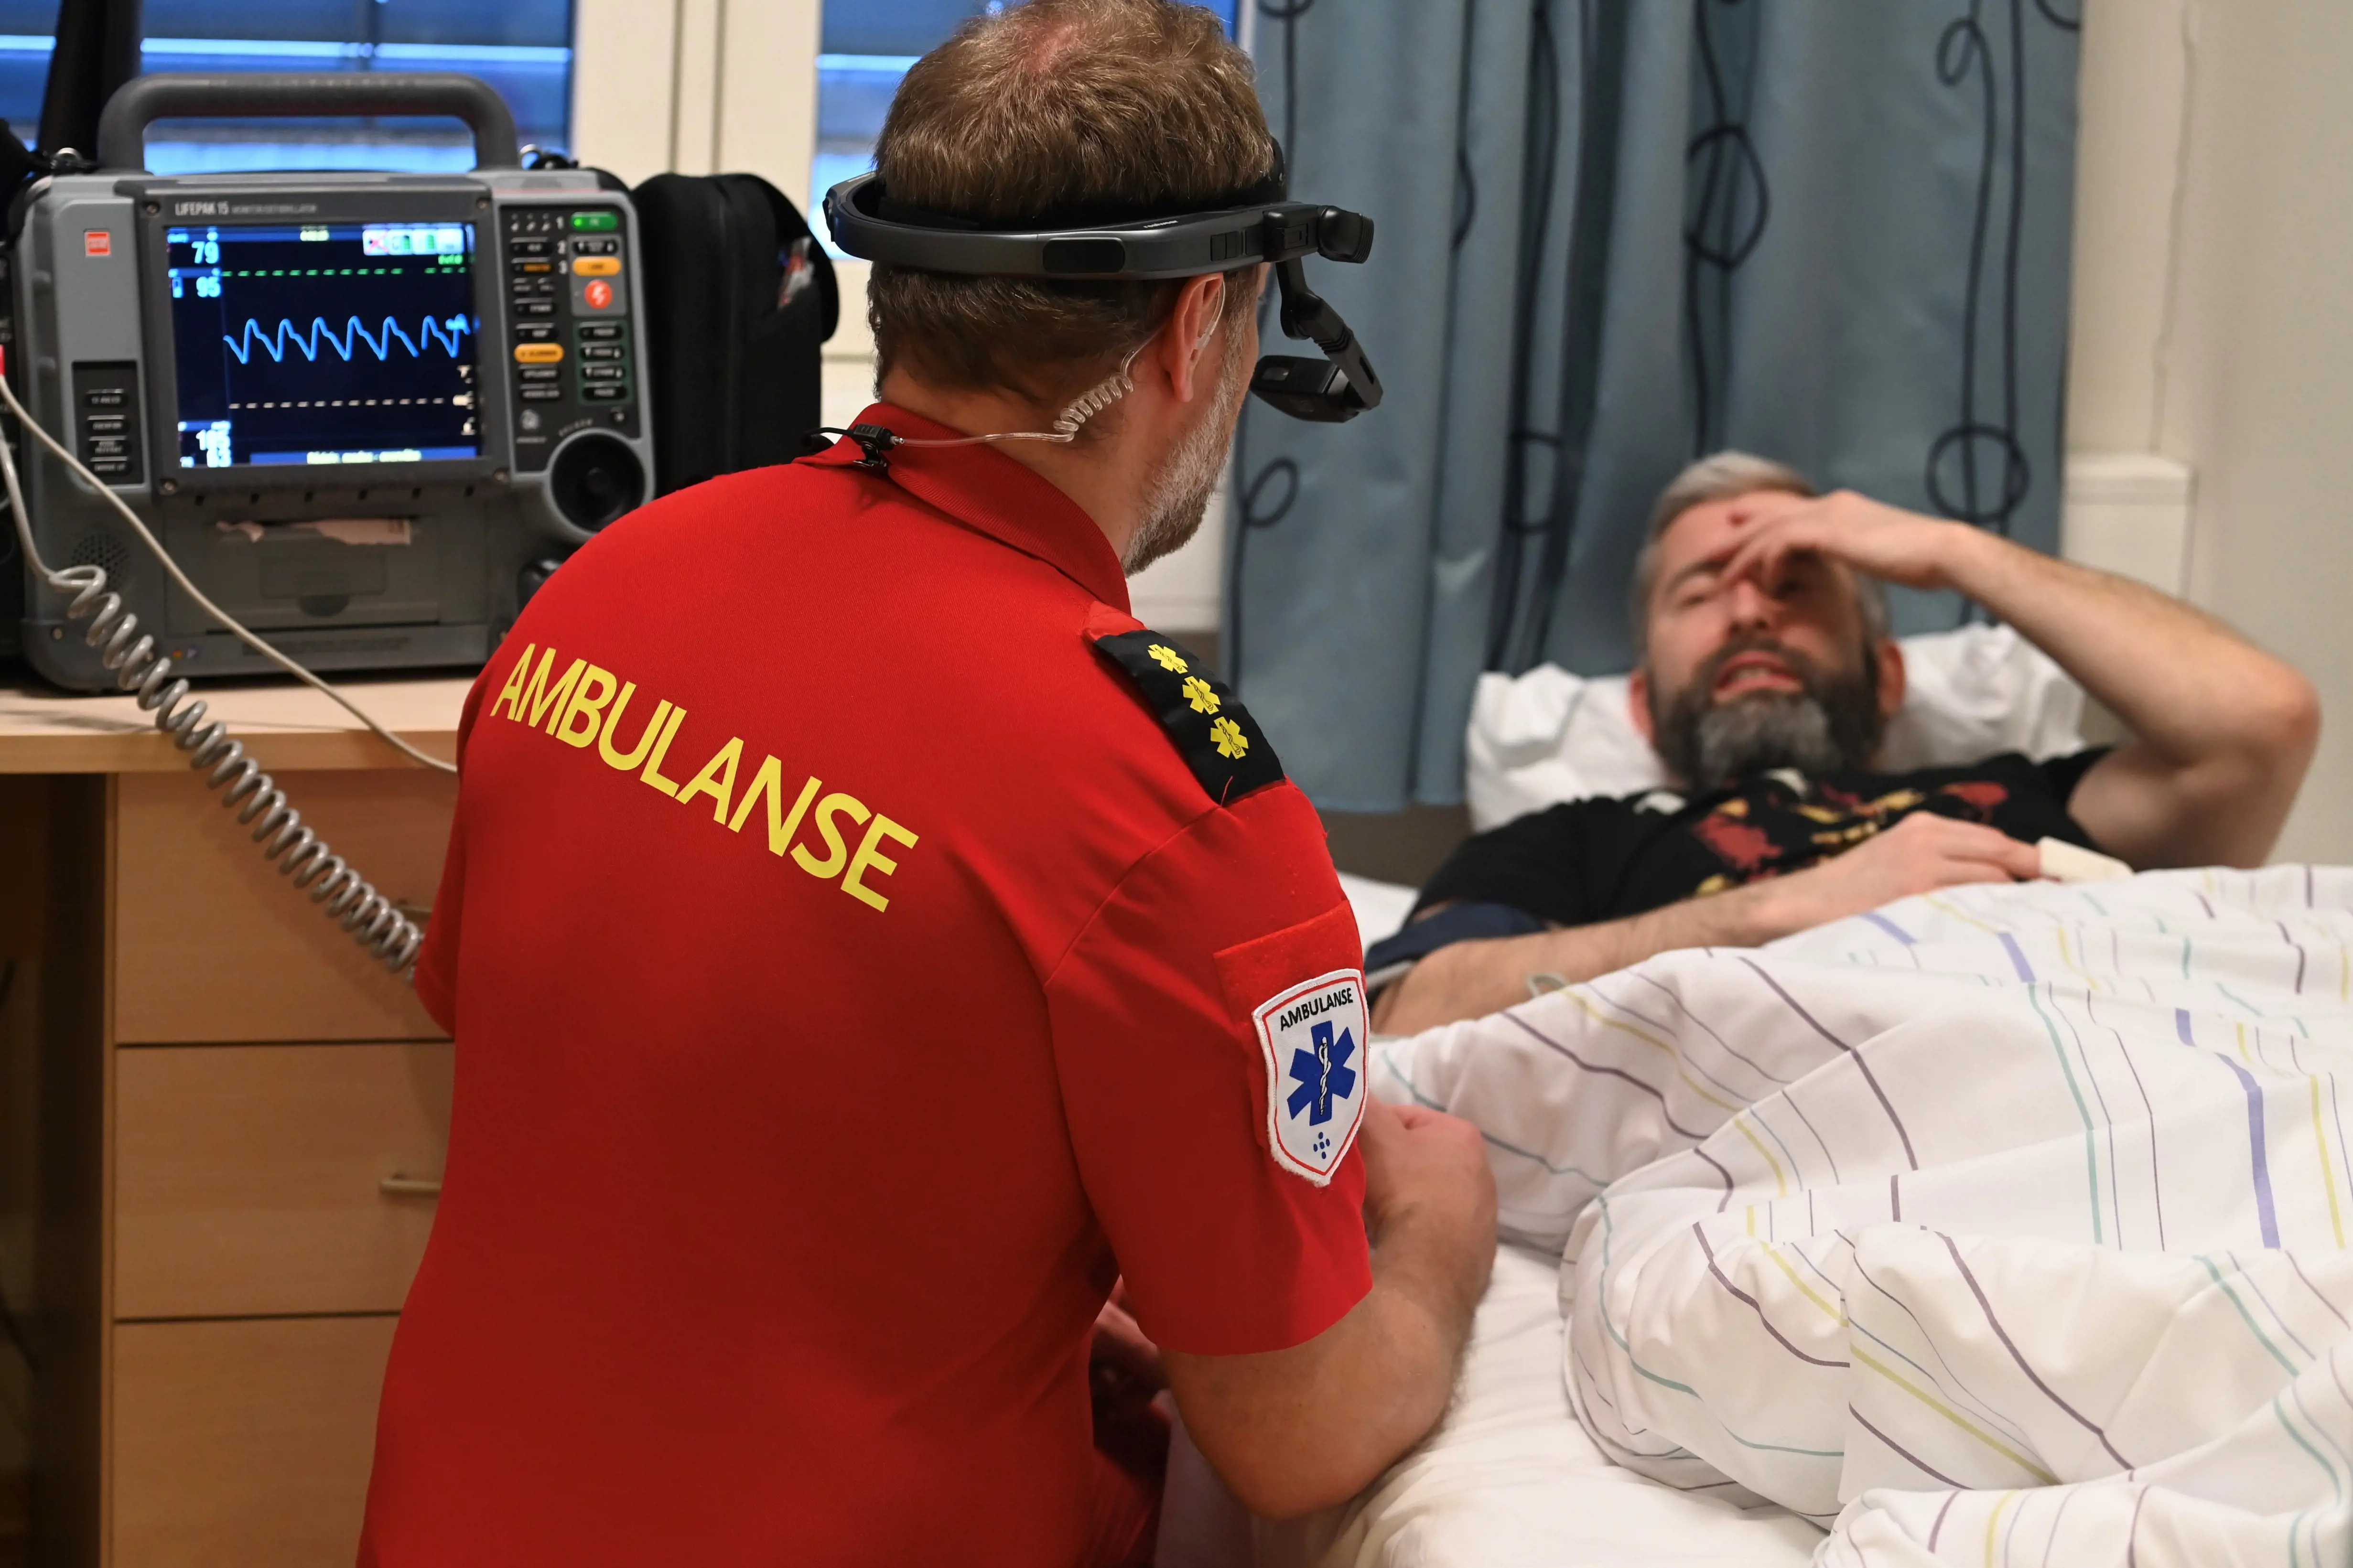 Ambulansearbeider med hodekamera i interaksjon med pasient.